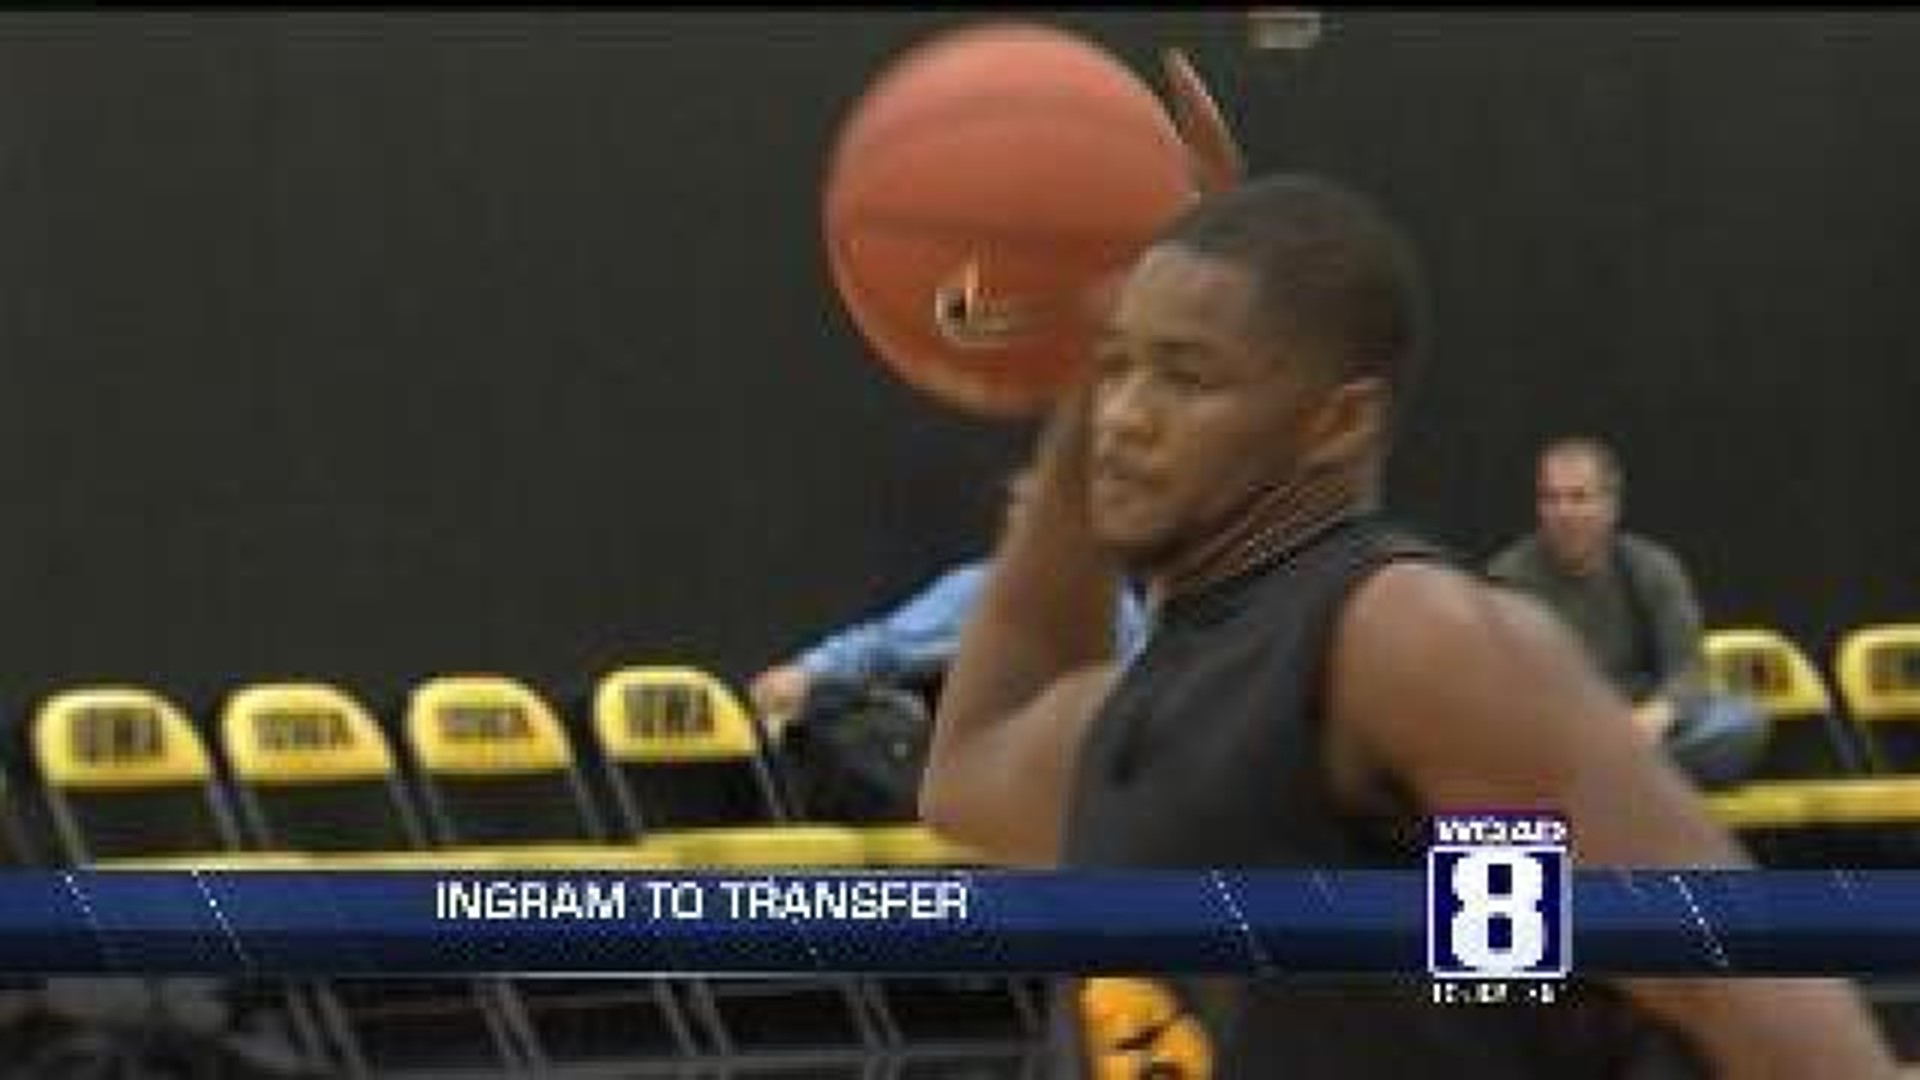 Ingram to Transfer